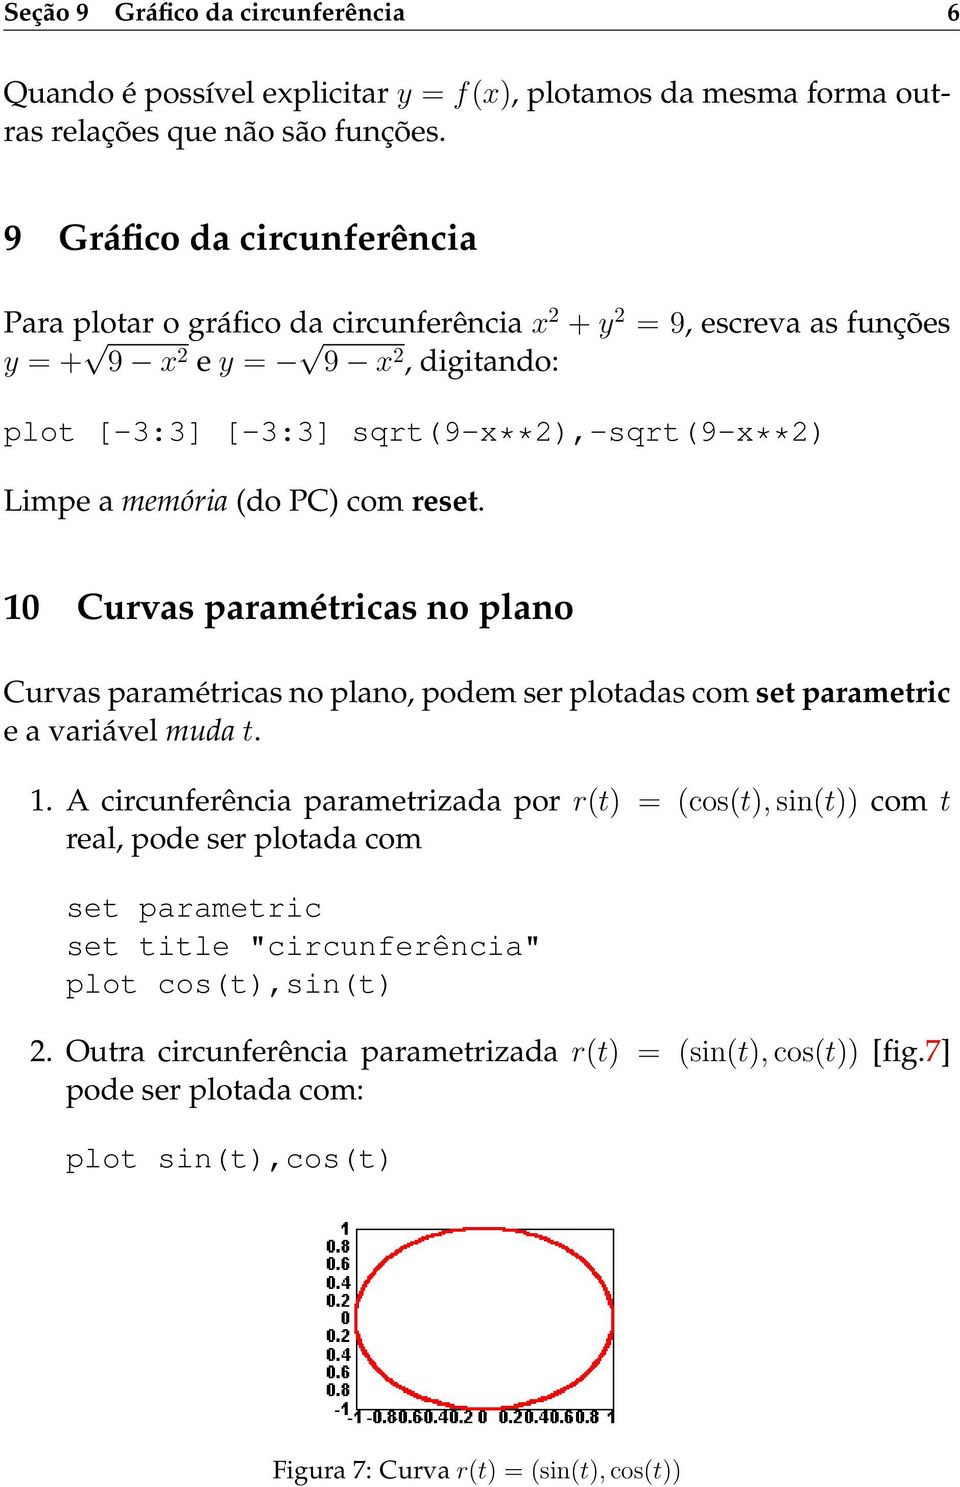 memória (do PC) com reset. 10 Curvas paramétricas no plano Curvas paramétricas no plano, podem ser plotadas com set parametric e a variável muda t. 1. A circunferência parametrizada por r(t) = (cos(t), sin(t)) com t real, pode ser plotada com set parametric set title "circunferência" plot cos(t),sin(t) 2.